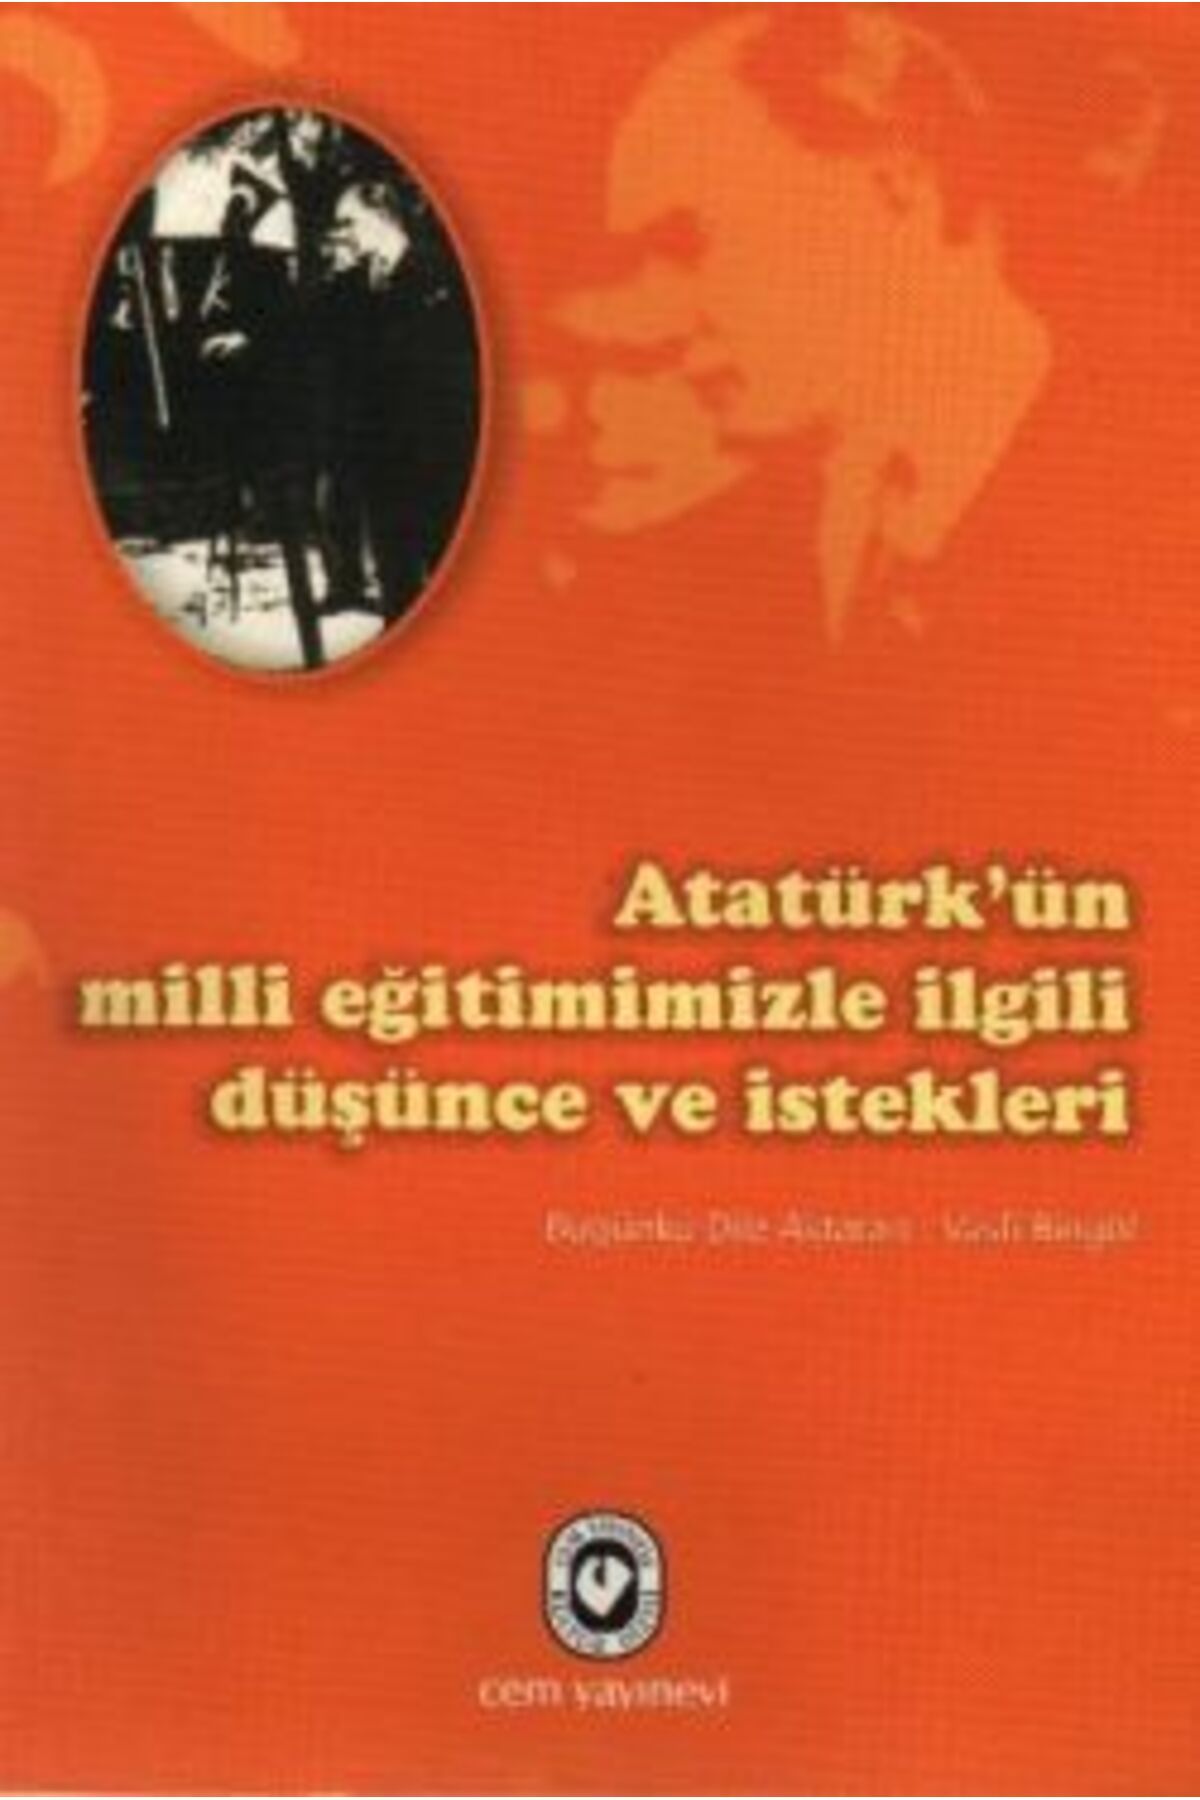 Cem Yayınevi Atatürk’ün Milli Eğitimimizle İlgili Düşünce ve İstekleri kitabı - Vasfi Bingöl - Cem Yayınevi